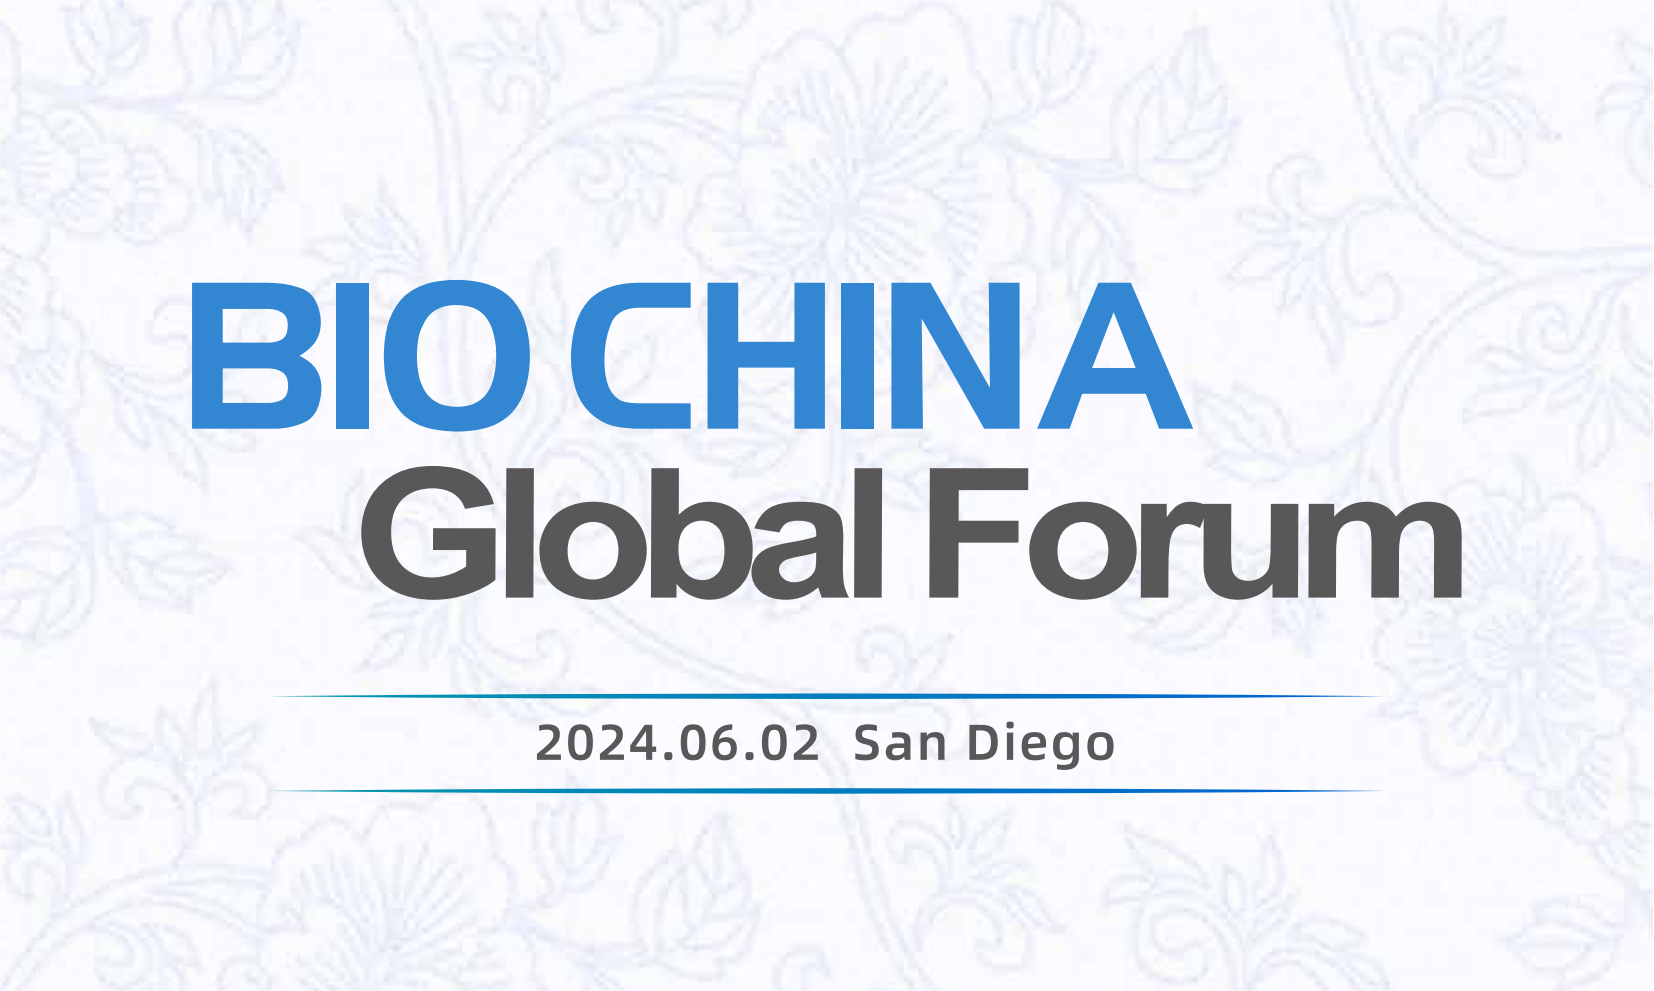 BIOCHINA Global Forum @San Diego